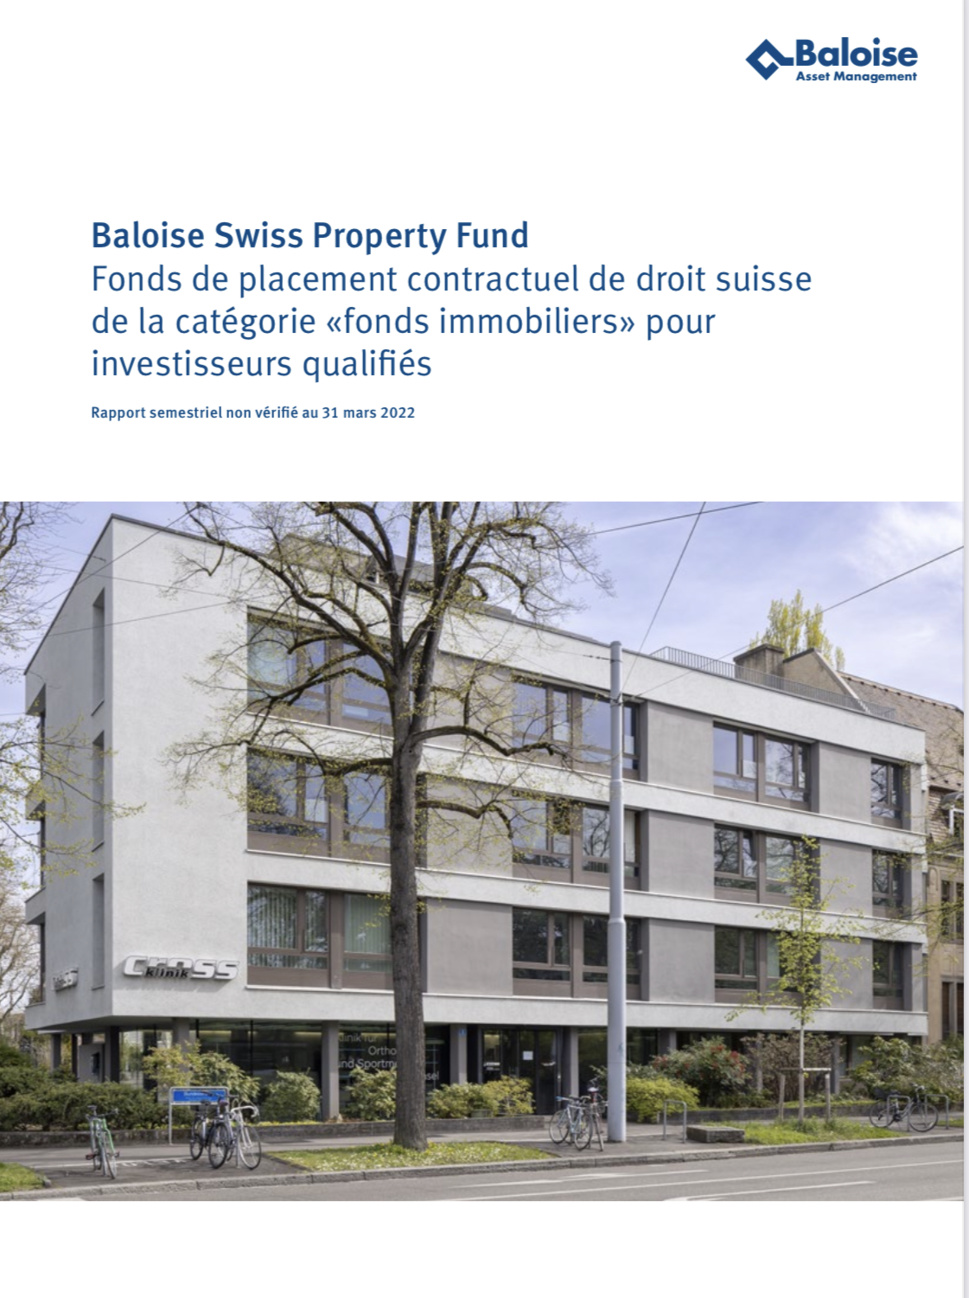 Le Baloise Swiss Property Fund présente un résultat semestriel 2021/2022 réjouissant